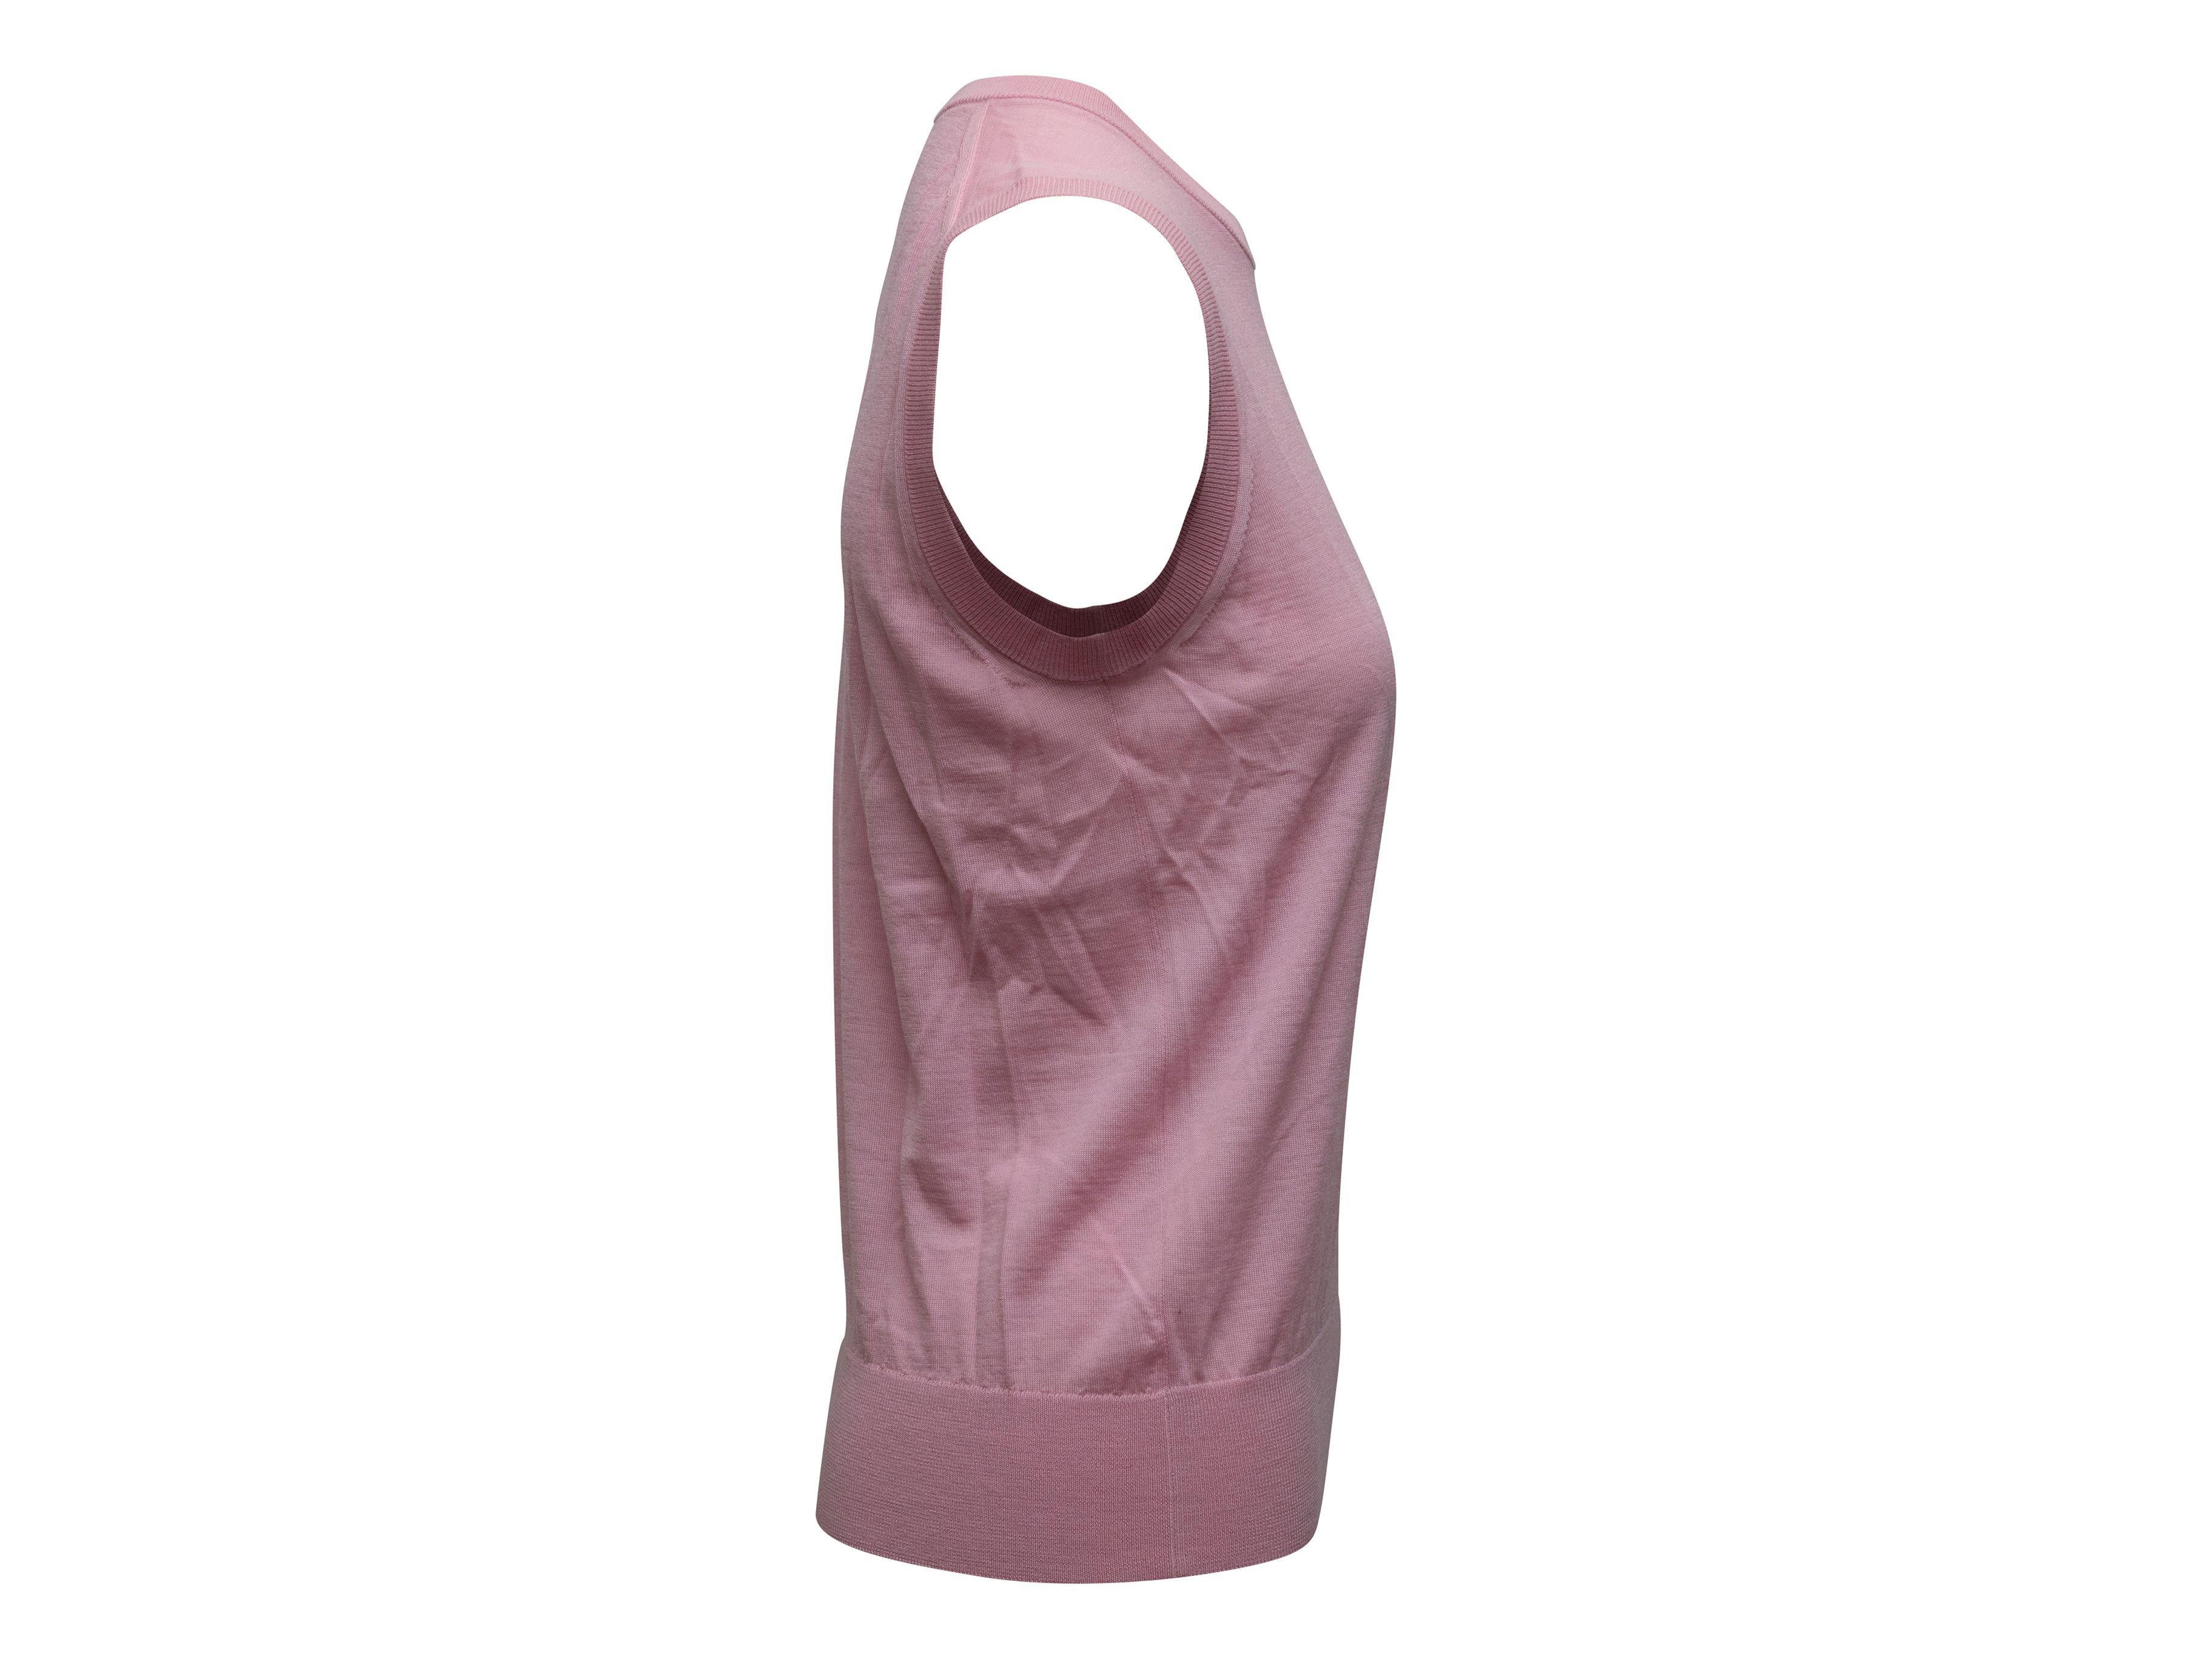 Dolce & Gabbana Light Pink Sleeveless Cashmere Top 2